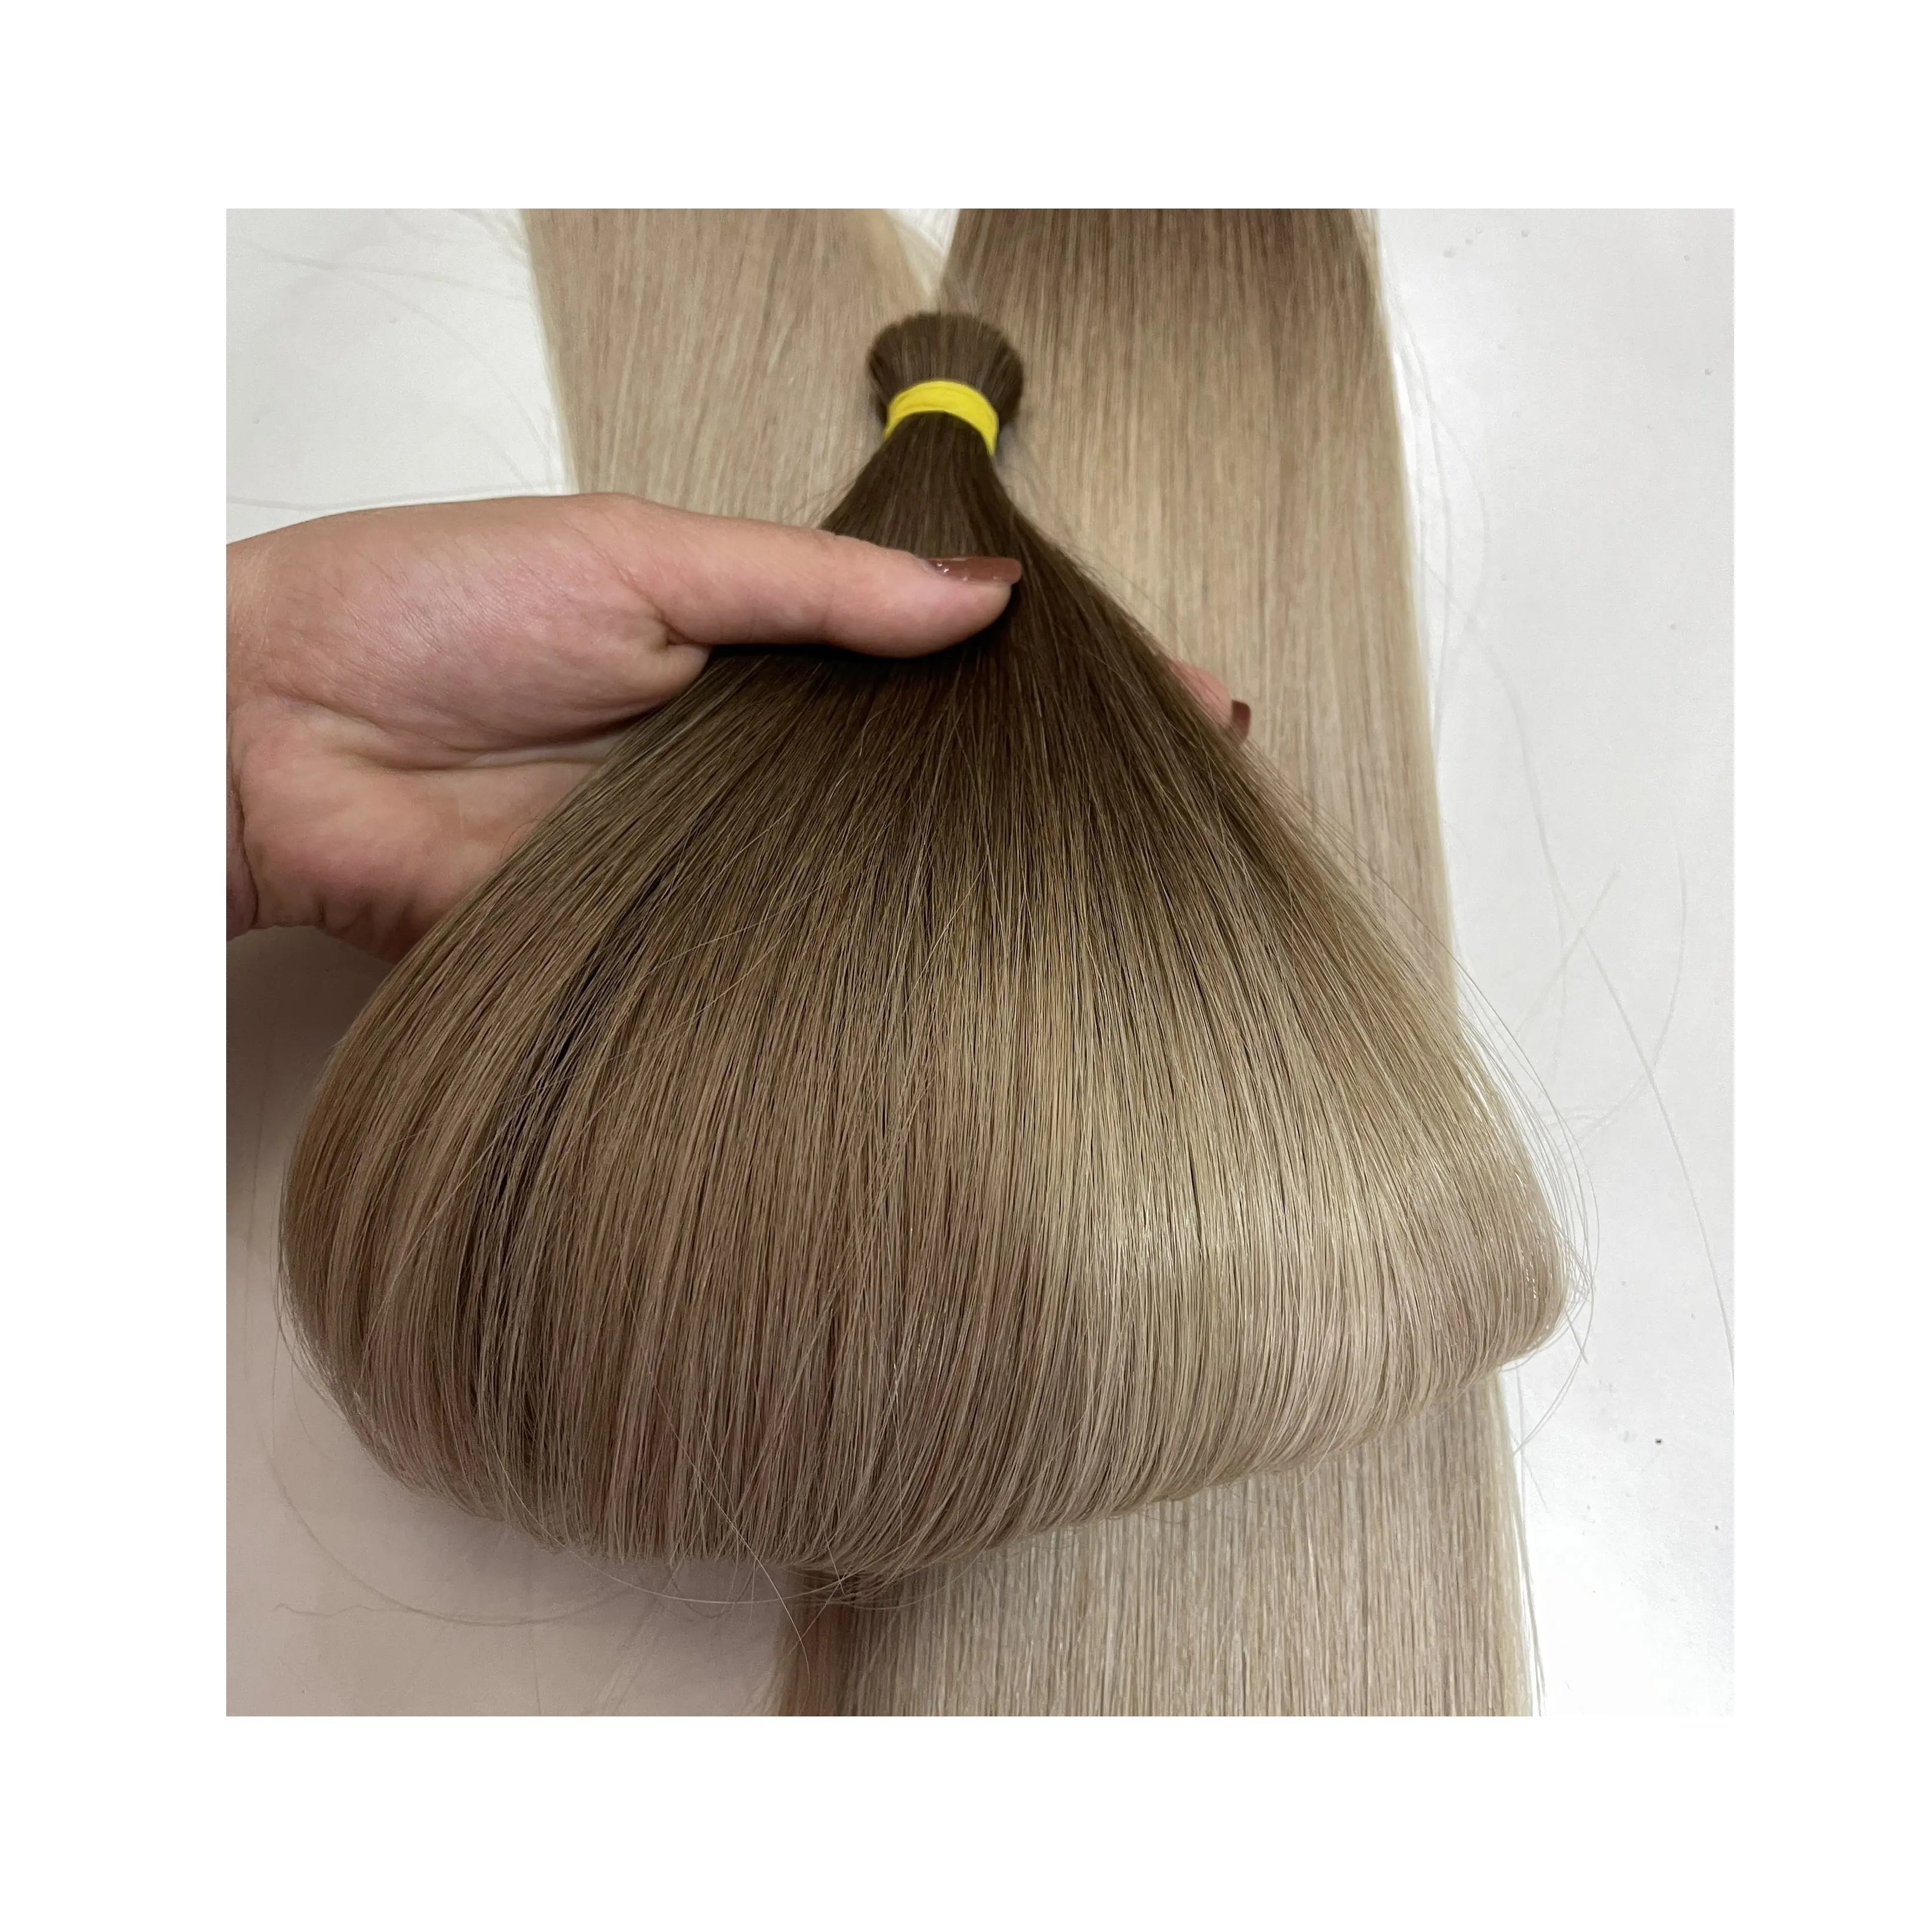 Yüksek kaliteli bakire manikür hizalanmış brezilyalı saç Ombre renk İnsan saç toplu, saç örgü toplu Vietnam